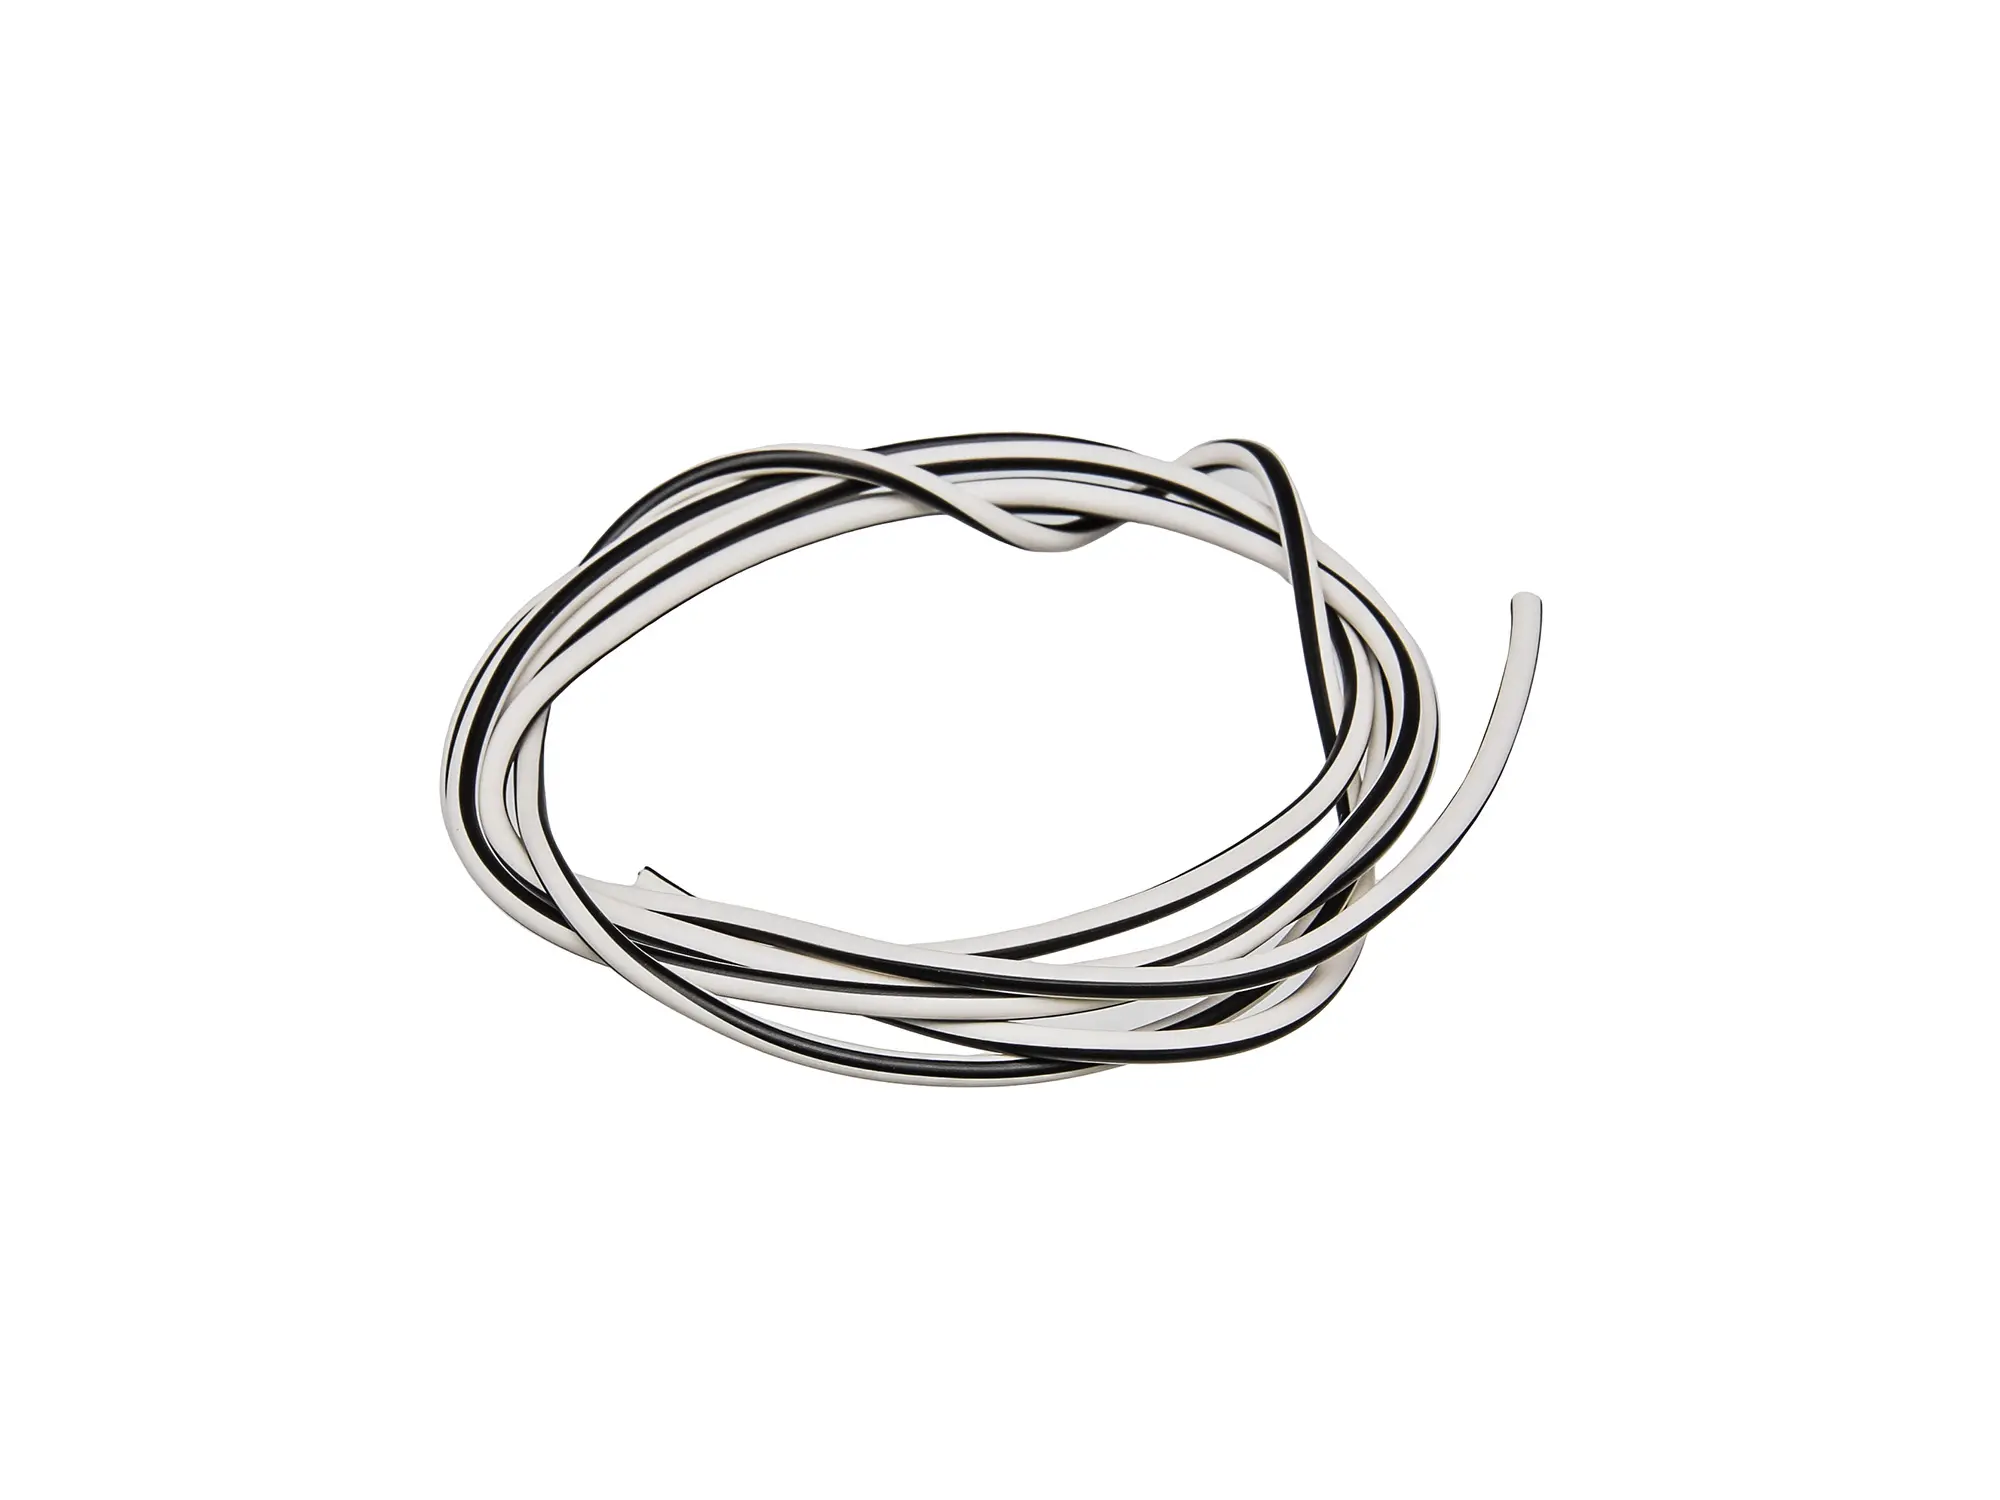 Kabel - Weiß/Schwarz 0,50mm² Fahrzeugleitung - 1m, Art.-Nr.: 10001774 - Bild 1